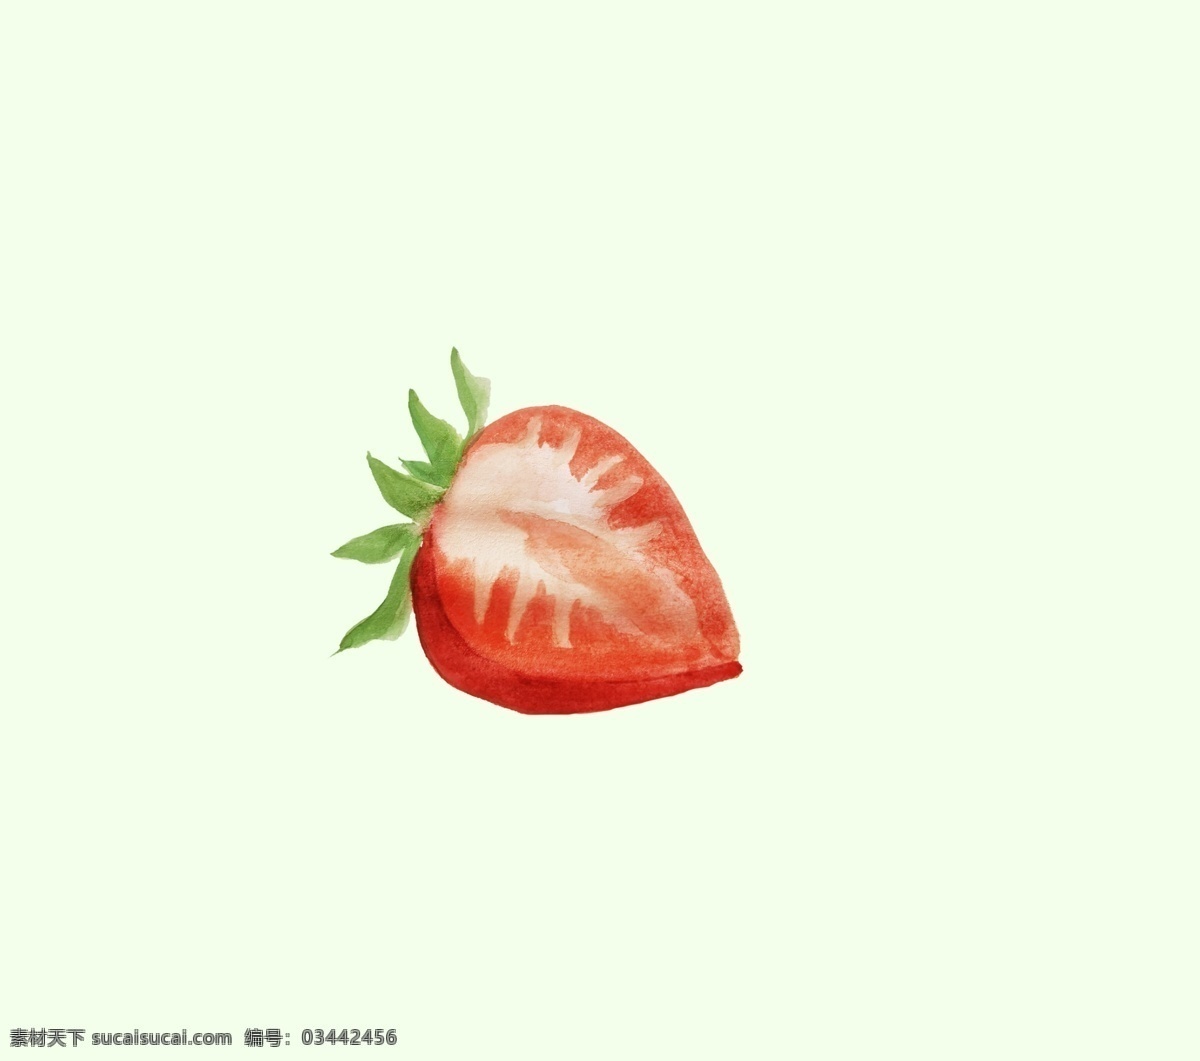 半个草莓 草莓 水果 植物 春季水果 网红水果 水彩画 水彩水果 插画 儿童插画 生物世界